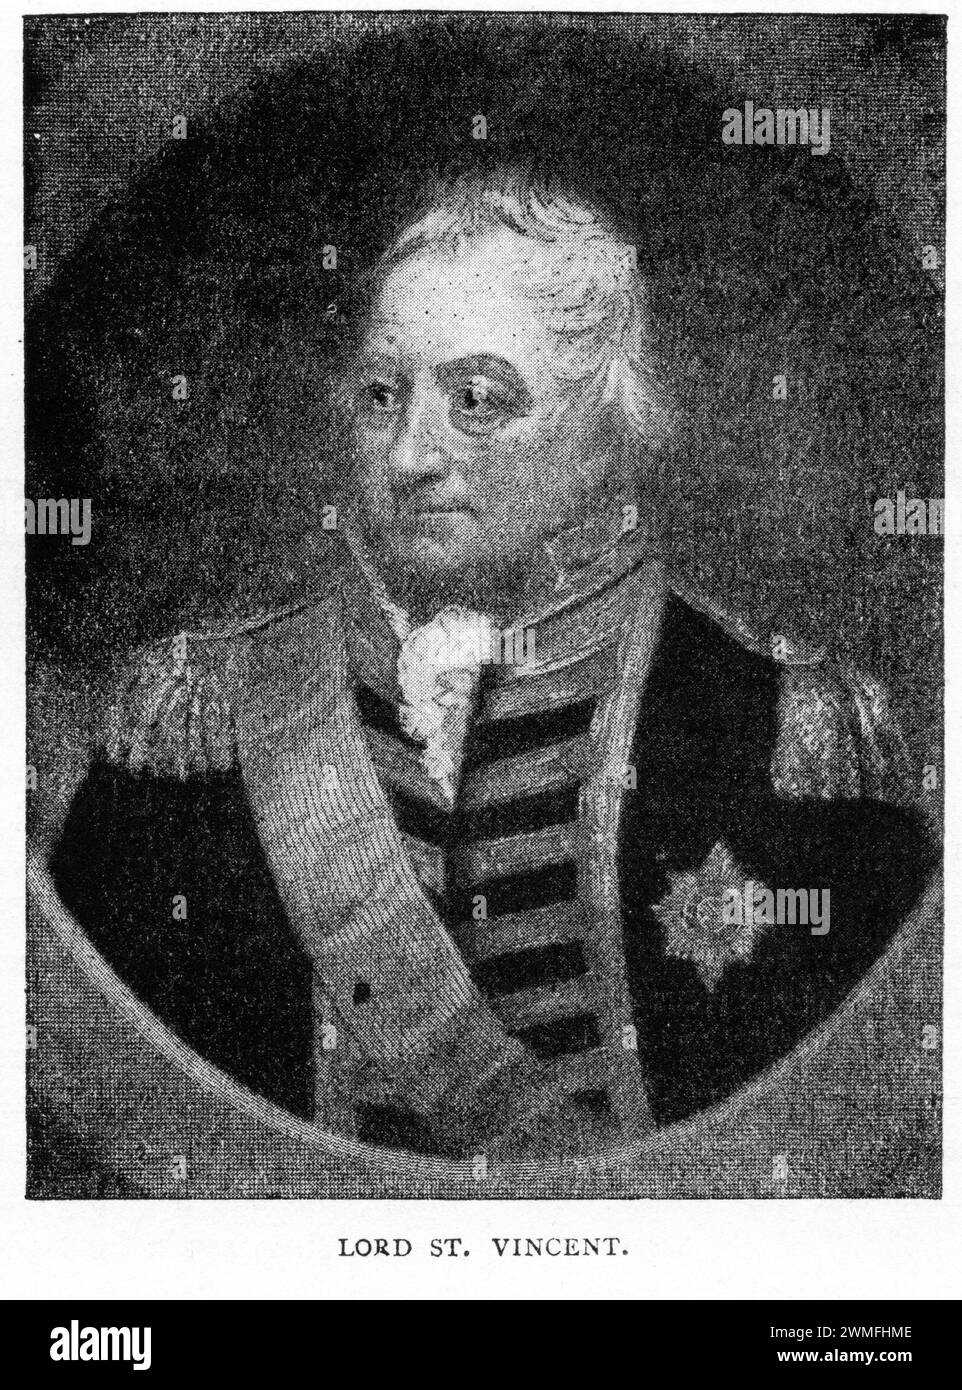 Porträt von Admiral of the Fleet John Jervis, 1. Earl of St Vincent (1735–1823), Admiral in der Royal Navy und Mitglied des britischen Parlaments. Jervis diente in der zweiten Hälfte des 18. Jahrhunderts bis ins 19. Jahrhundert und war aktiver Befehlshaber während des Siebenjährigen Krieges, des Amerikanischen Unabhängigkeitskrieges, des Französischen Unabhängigkeitskrieges und der Napoleonischen Kriege. Er ist vor allem für seinen Sieg bei der Schlacht von Kap Saint Vincent von 1797 bekannt, aus der er seine Titel erhielt, und als Schutzpatron von Horatio Nelson. Stockfoto